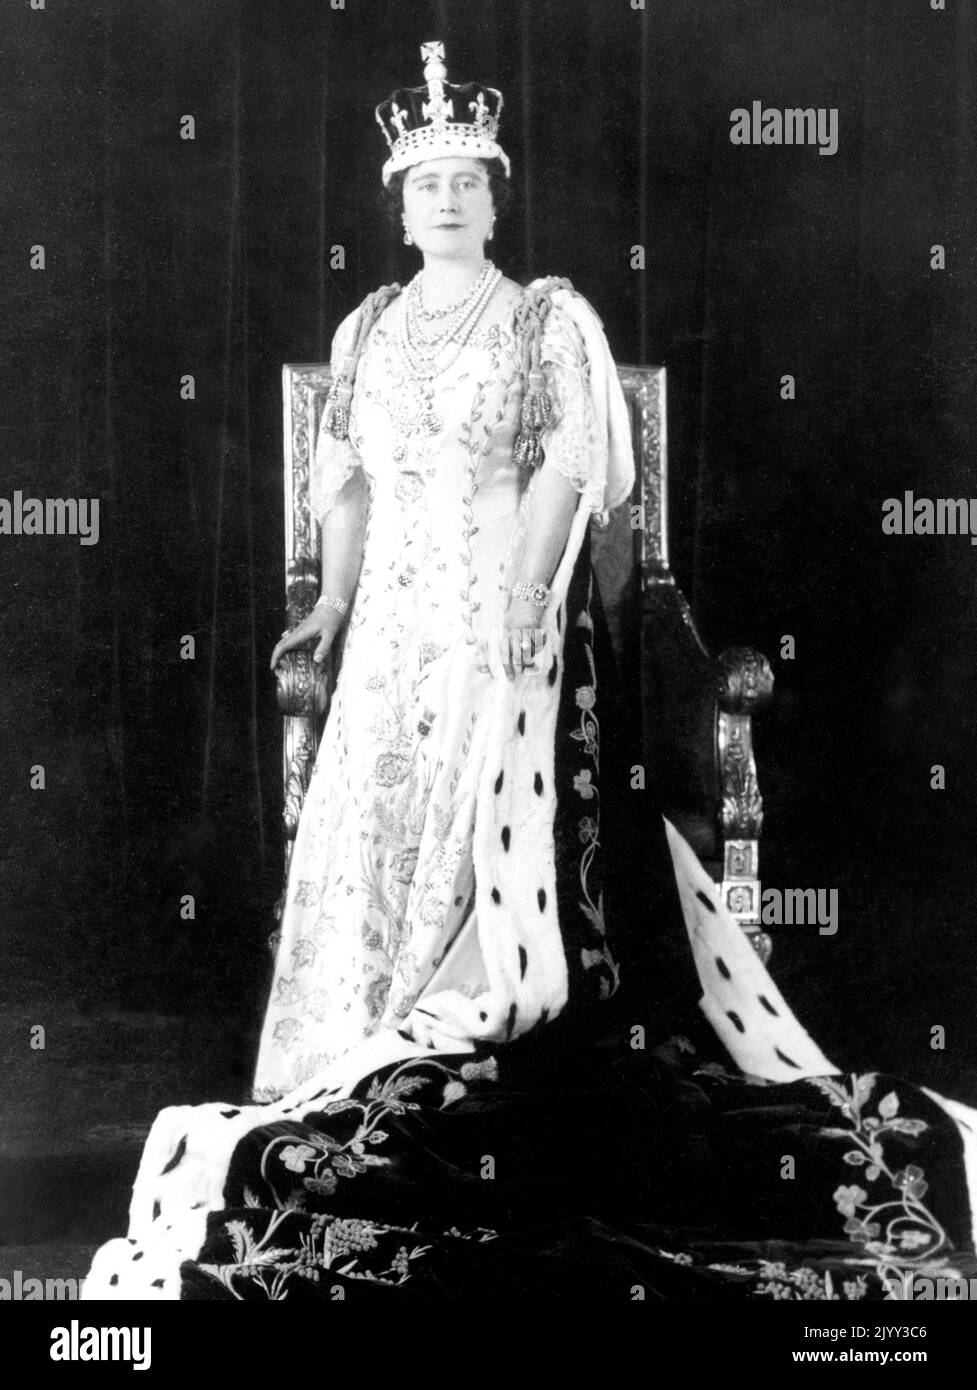 Foto del file datata 12/5/1937 della Regina Elisabetta con la sua corona e gli abiti per incoronazione. Data di emissione: Giovedì 8 settembre 2022. Foto Stock